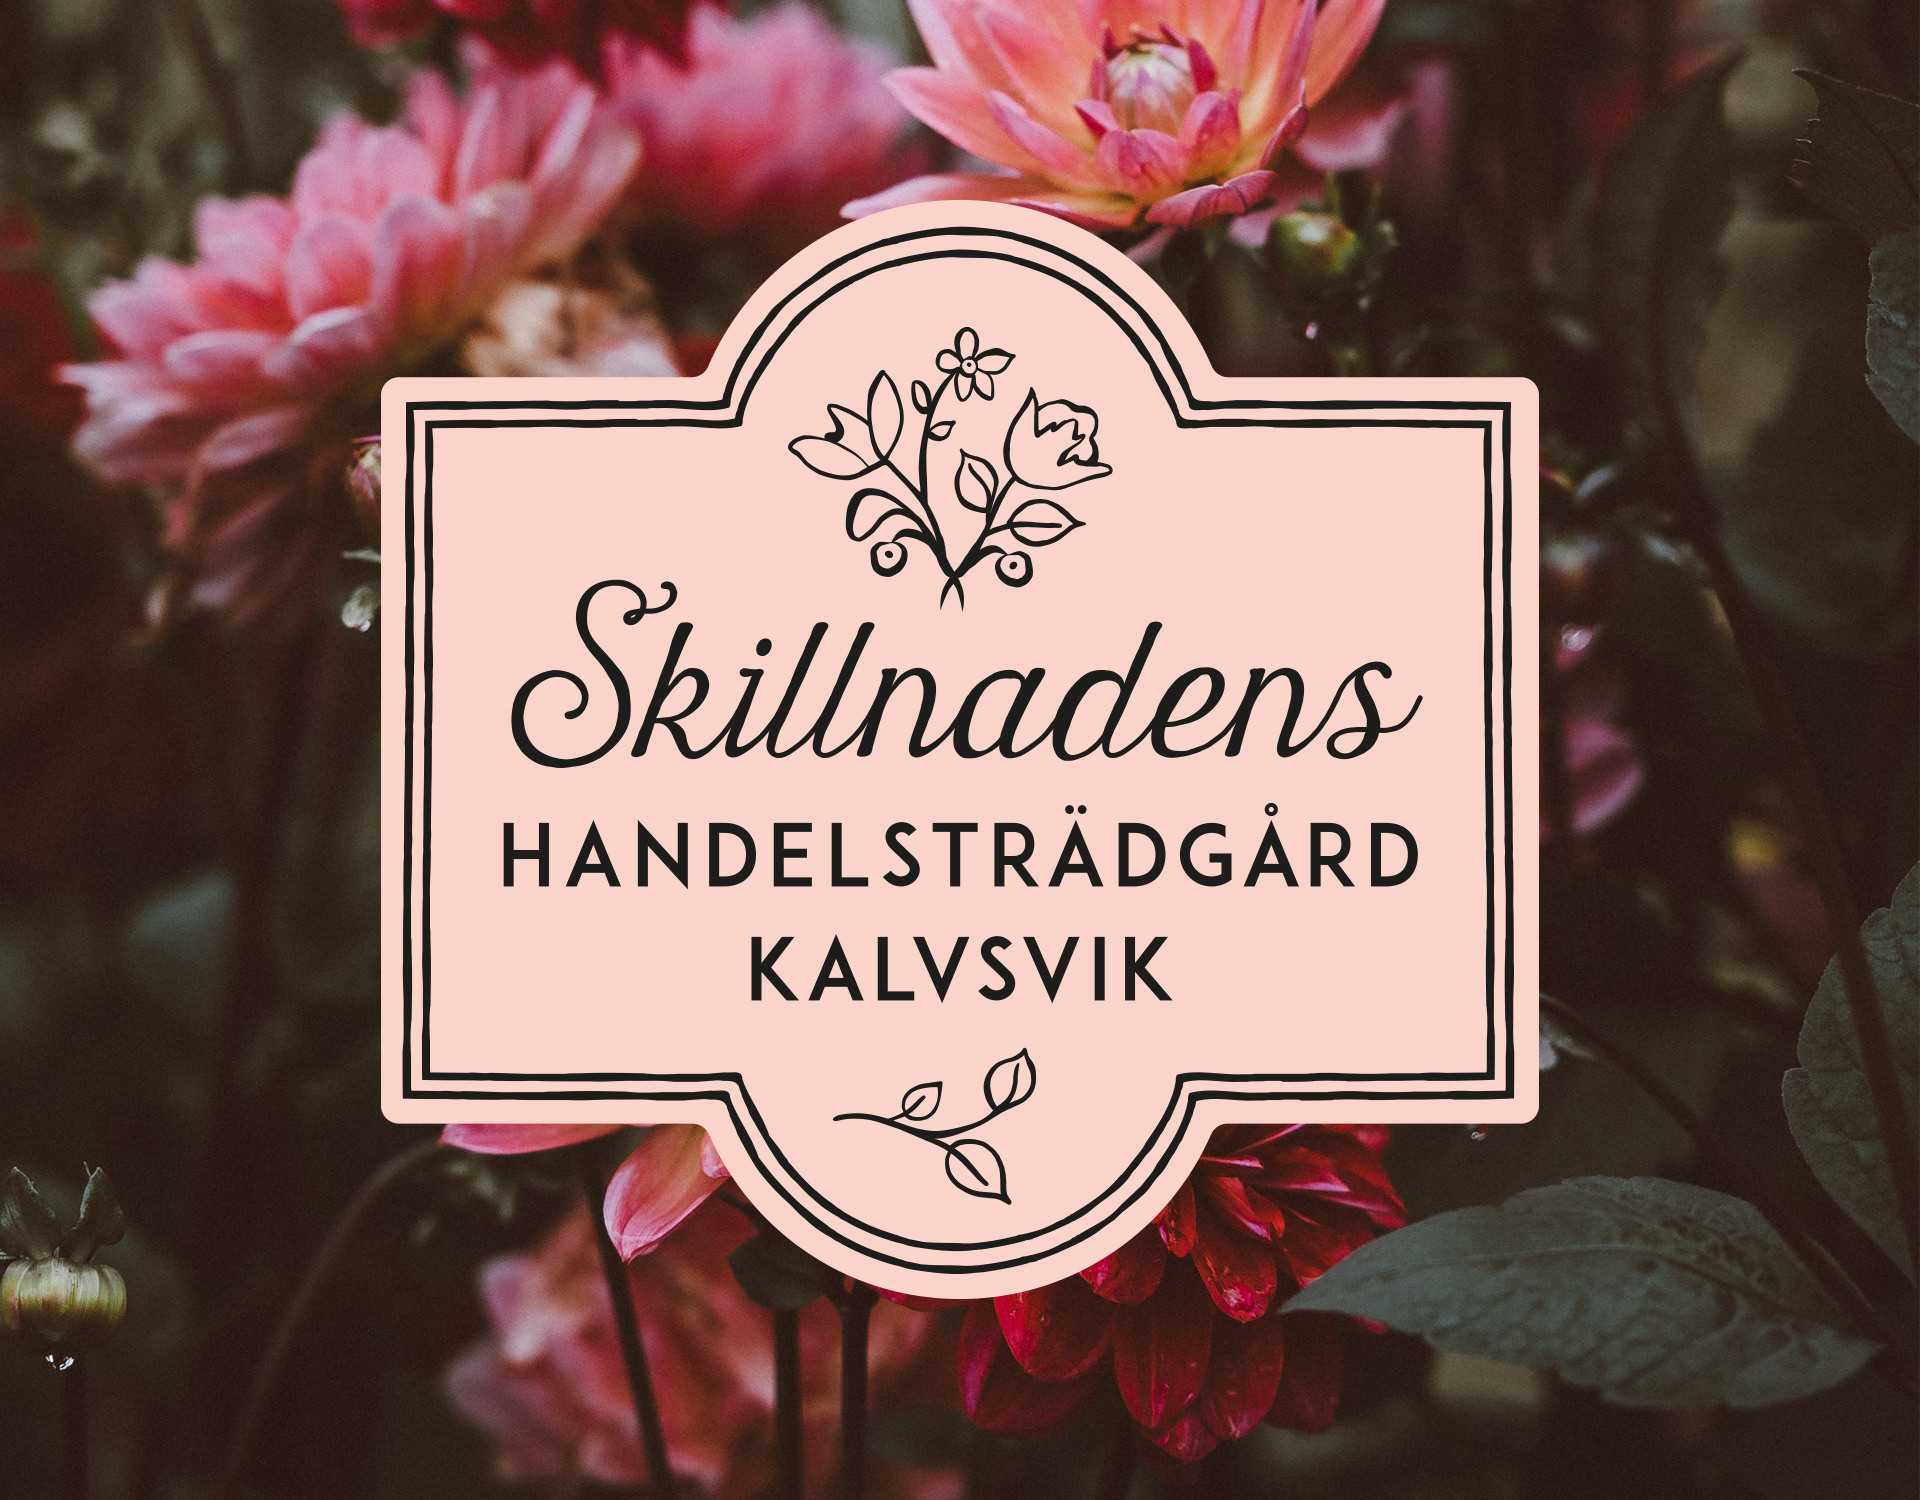 Logotype for Skillnadens Handelsträdgård designed by Studio Poi